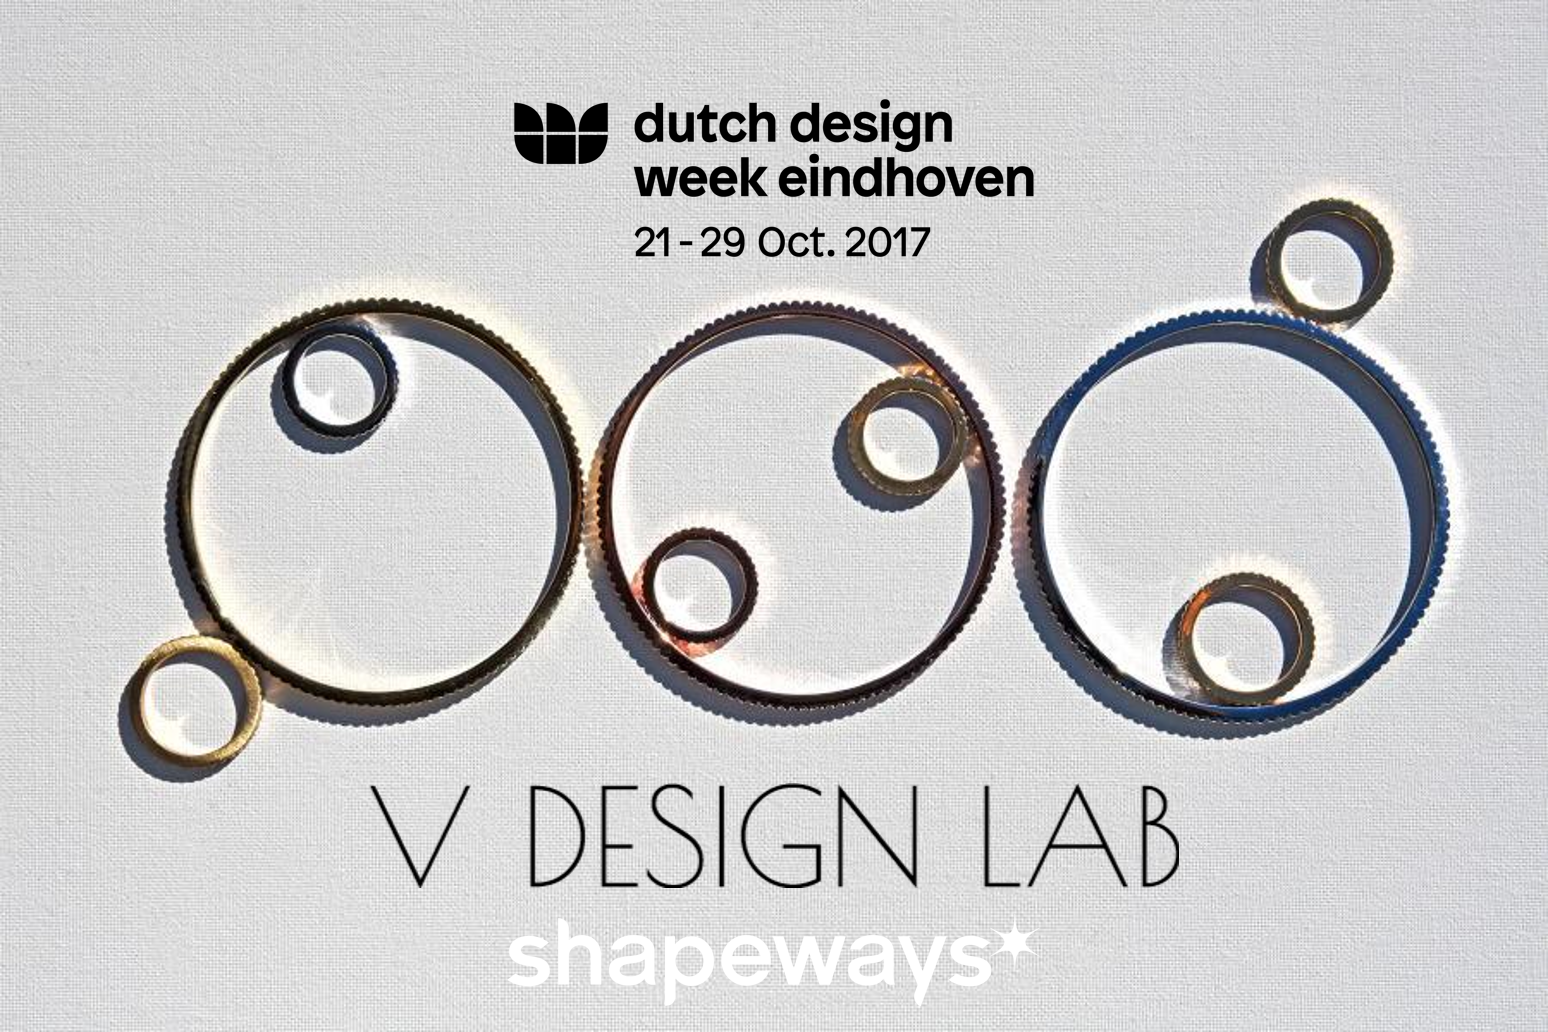 V DESIGN LAB Showcasing at DDW 2017 - Dutch Design Week